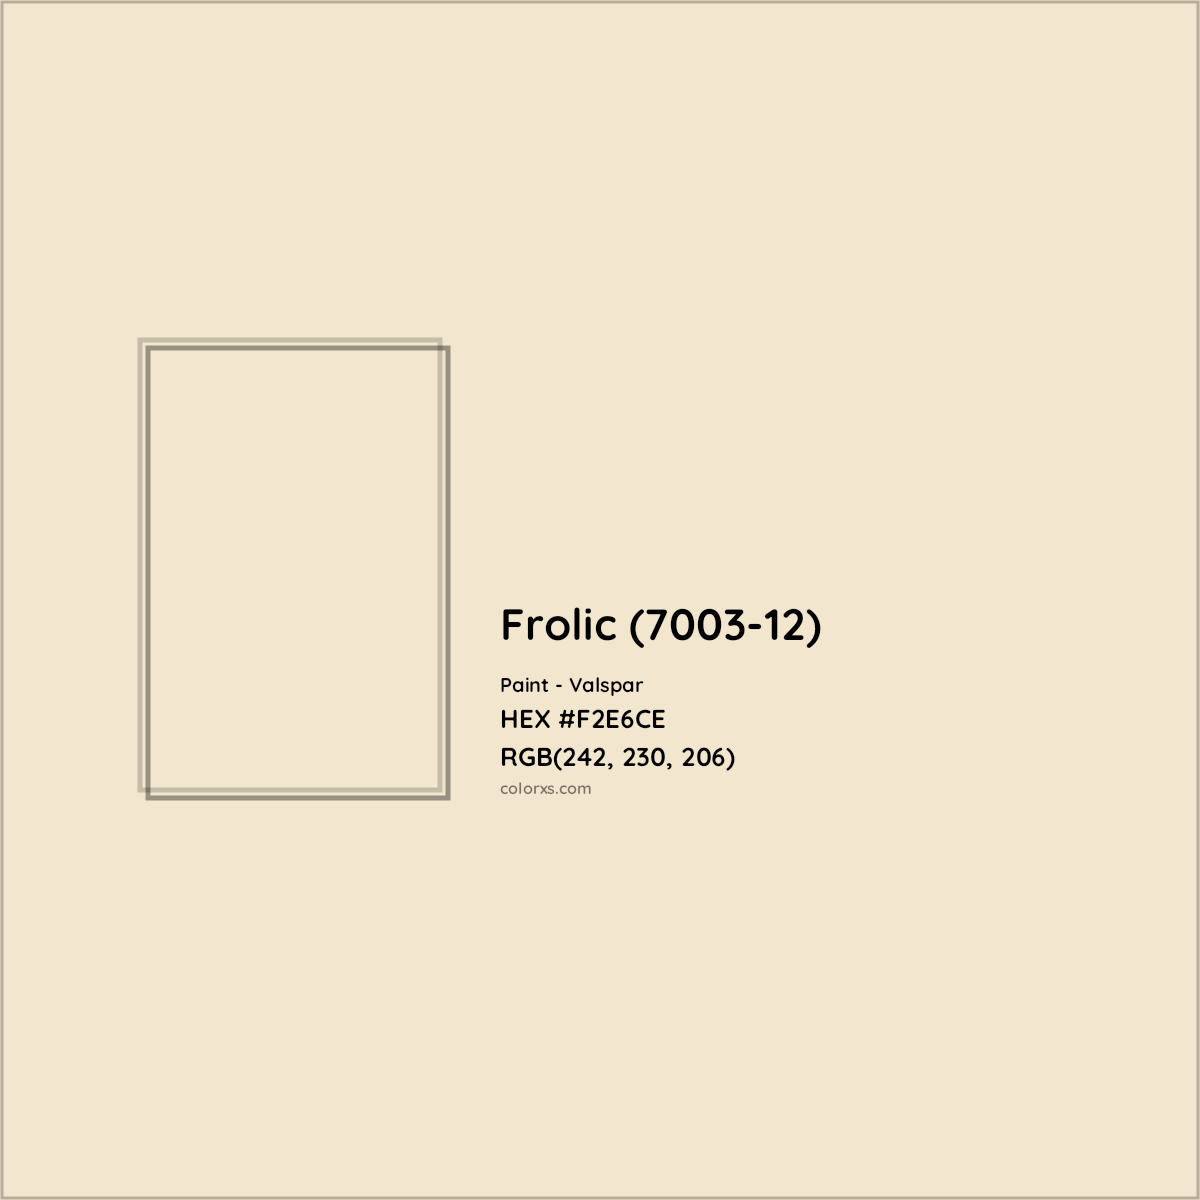 HEX #F2E6CE Frolic (7003-12) Paint Valspar - Color Code